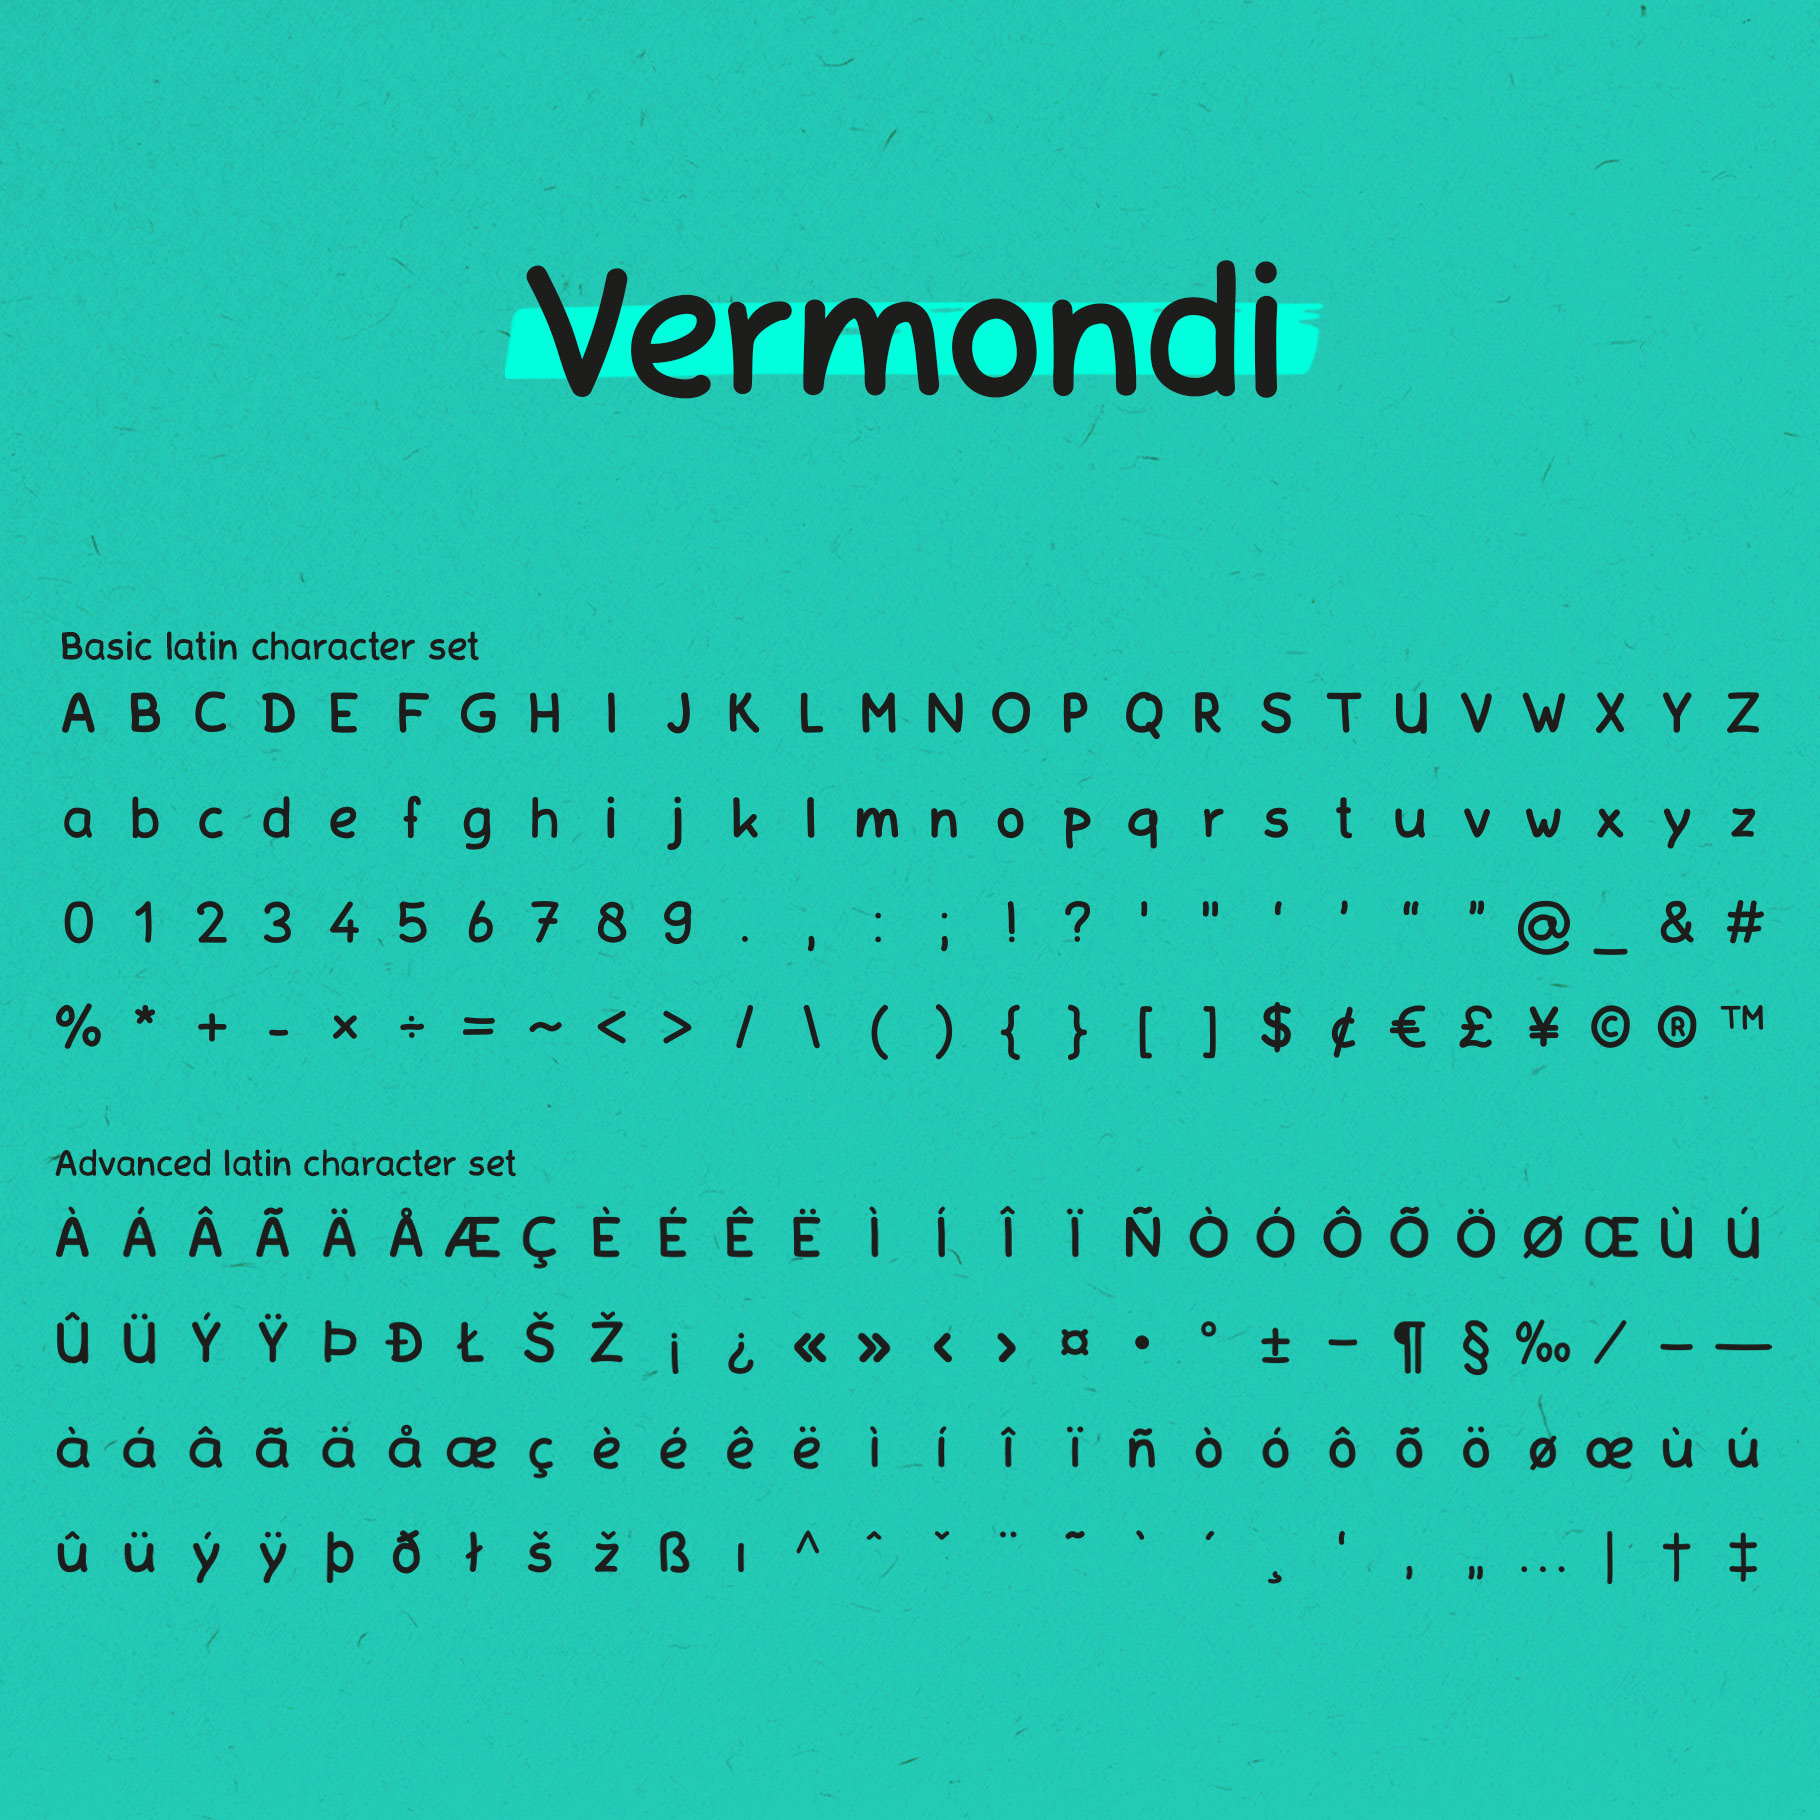 Vermondi Handwritten Font created by RubenO.